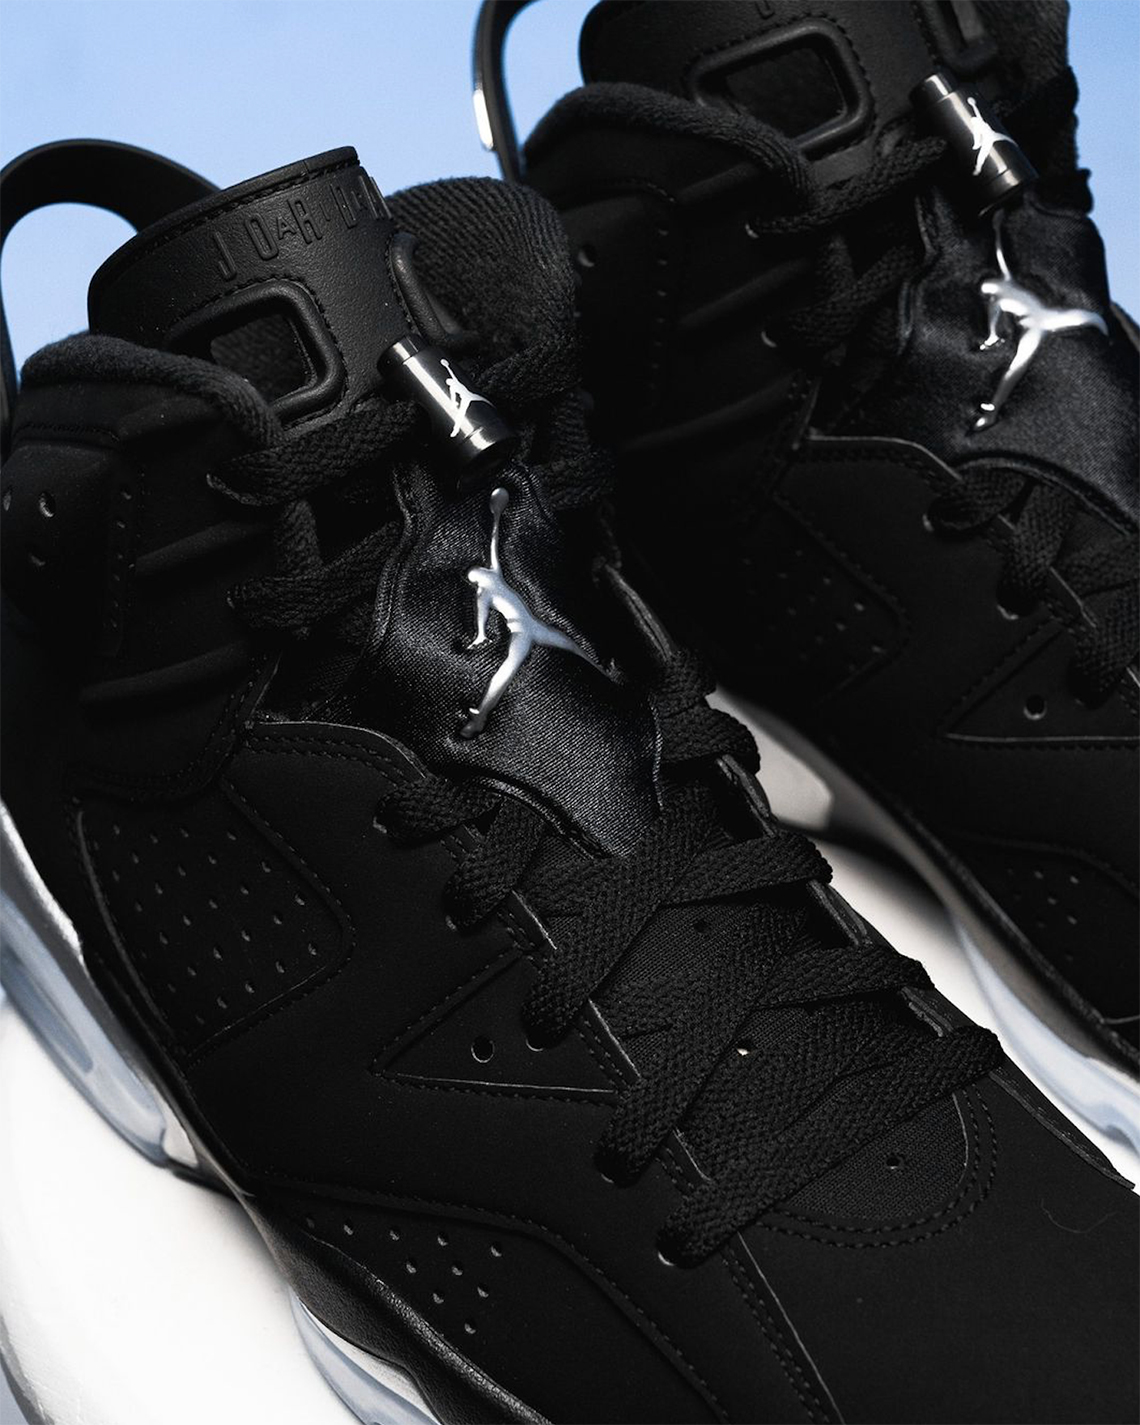 Air Jordan 6 Black Metallic DX2836-001 Release Date